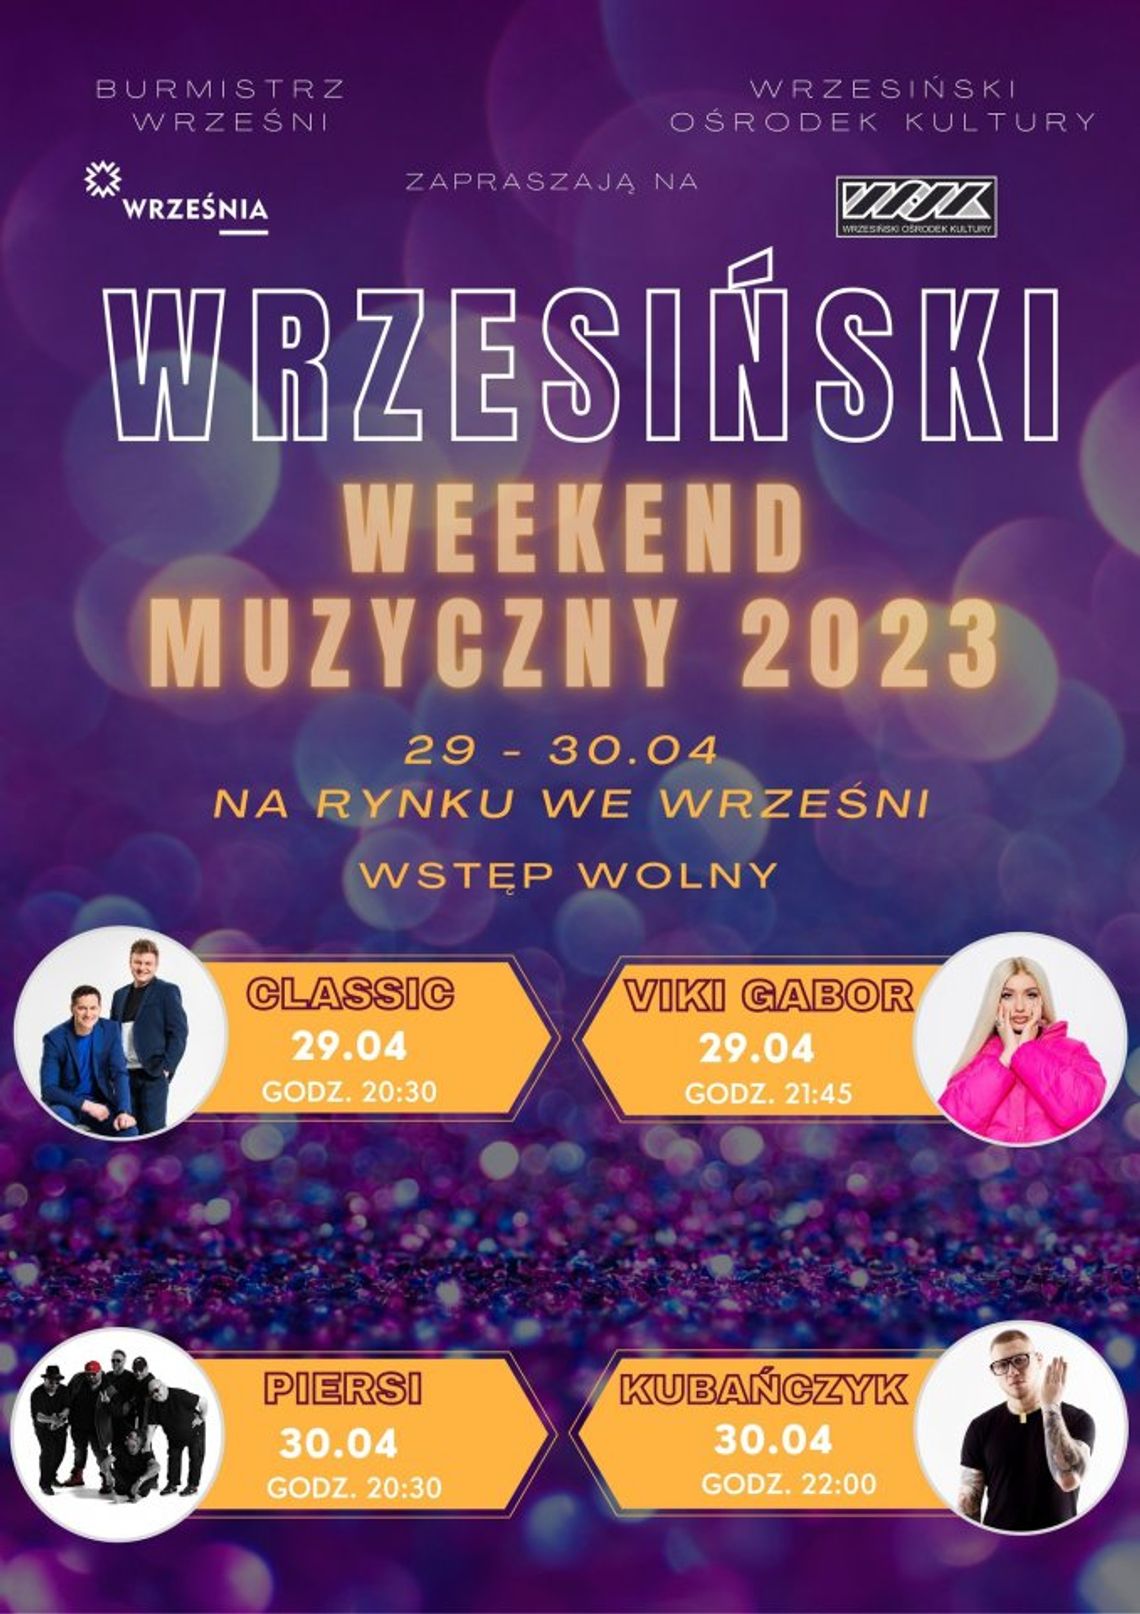 Wrzesiński Weekend Muzyczny. Na jaką gwiazdę czekają wrześnianie?